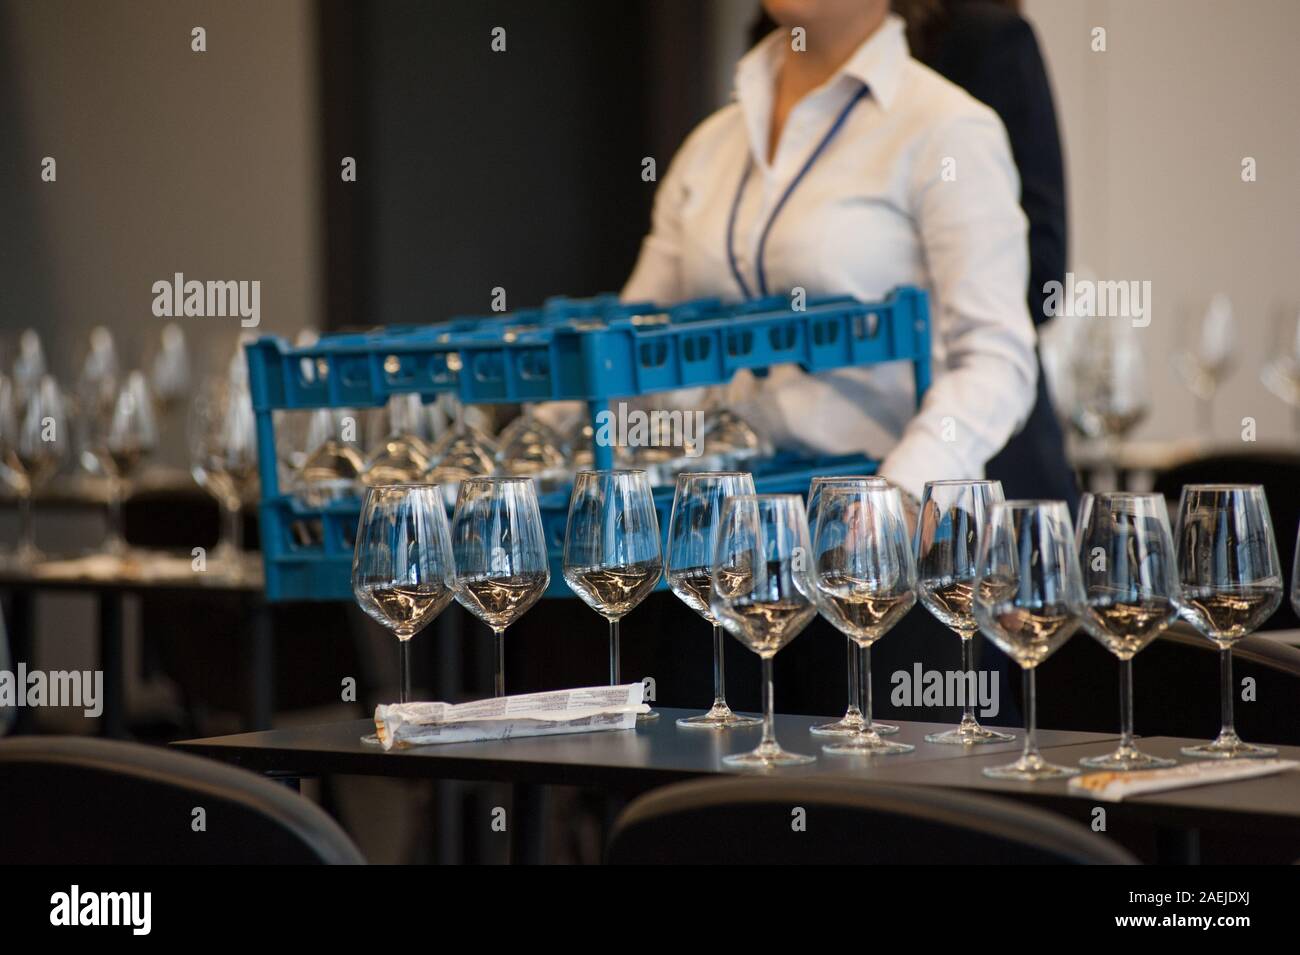 Cameriera di impostare le tabelle con cristallo gobles per una degustazione di vino workshop. Il servizio di catering e il personale di sala a lavoro. Foto Stock